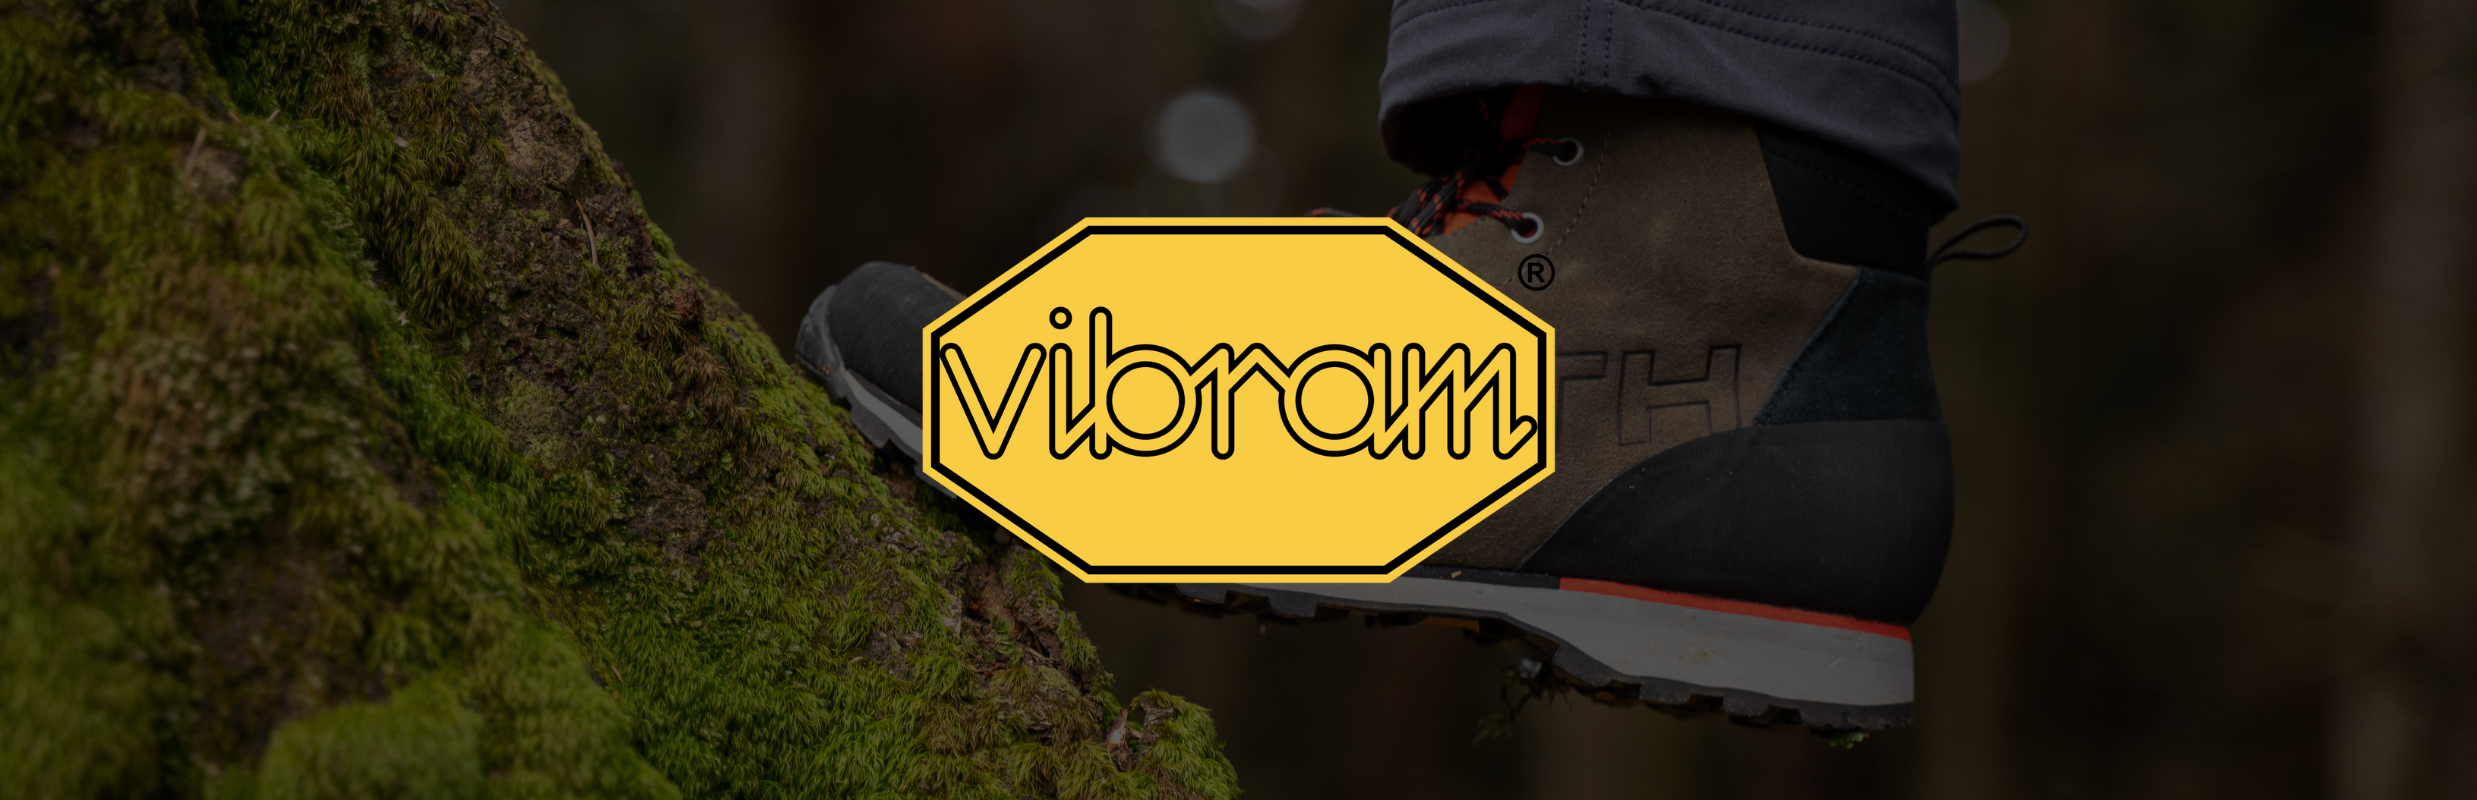 VIBRAM®: Kultová značka je zárukou pevných krokov v príjemných aj náročných podmienkach